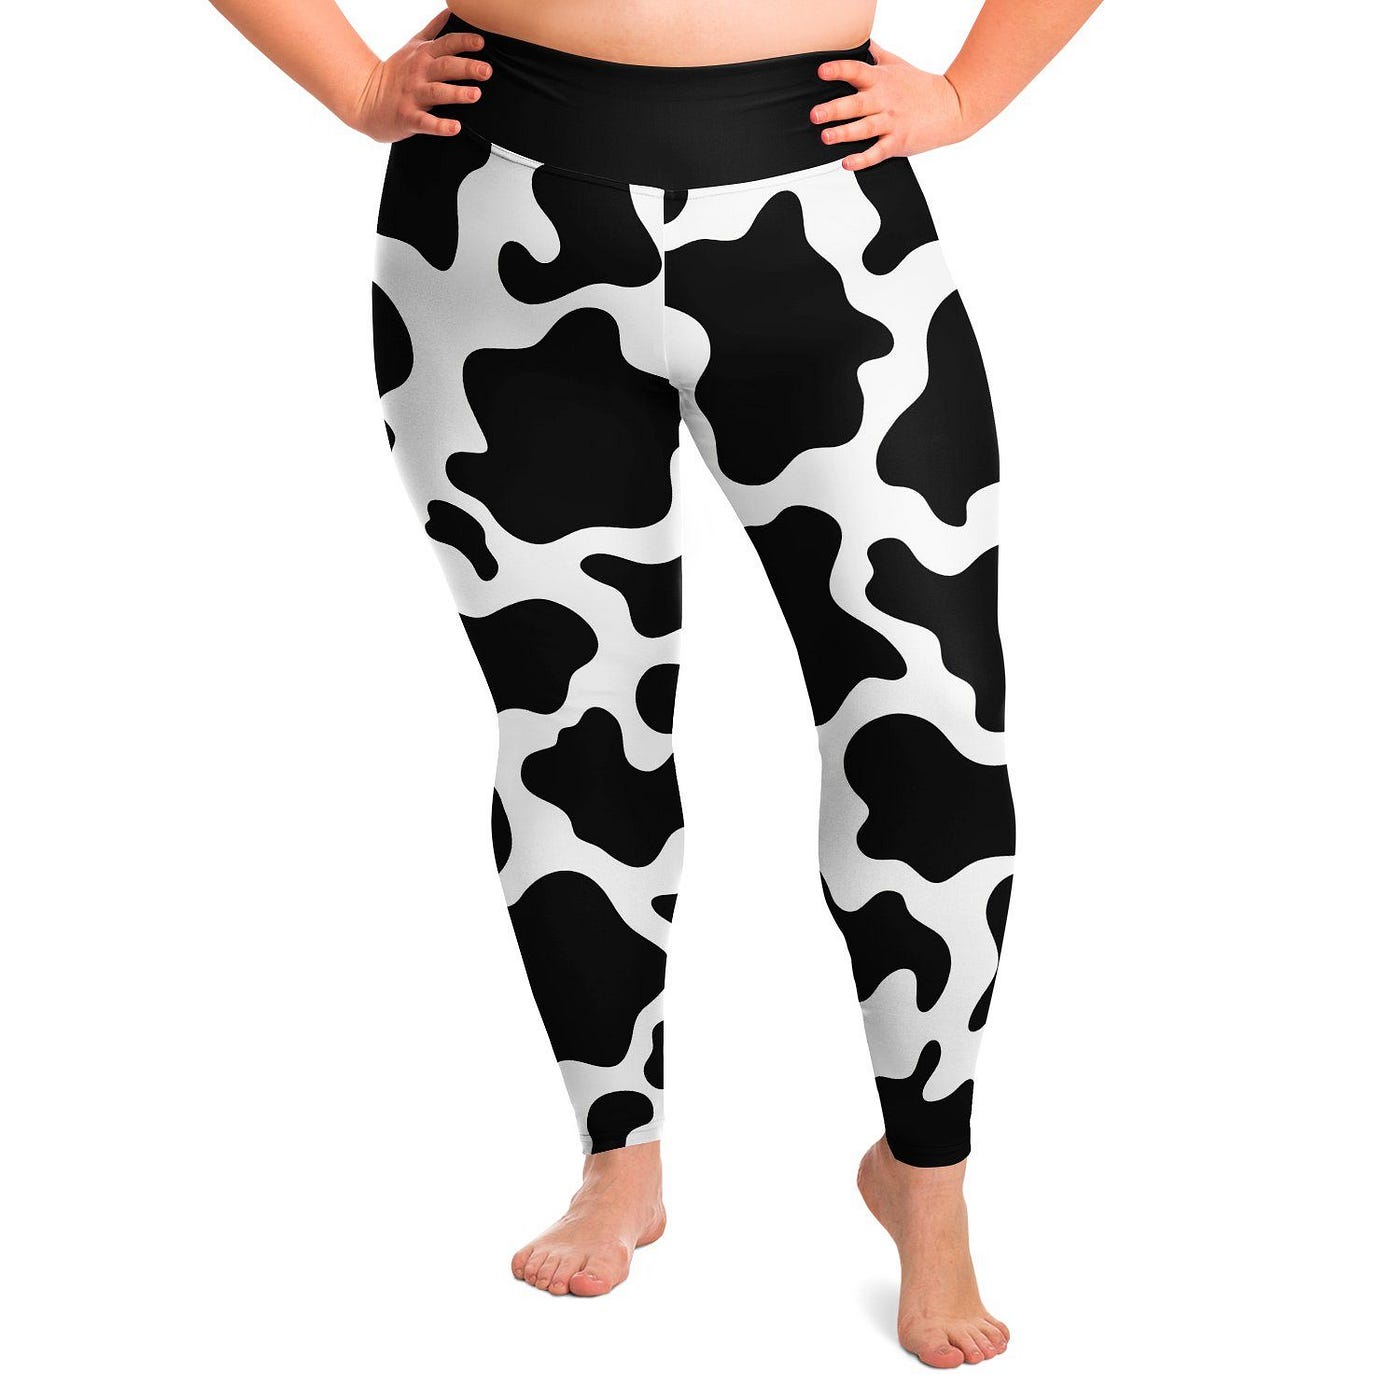 Plus Size Women's Cow Print Leggings Official Merch CL1211